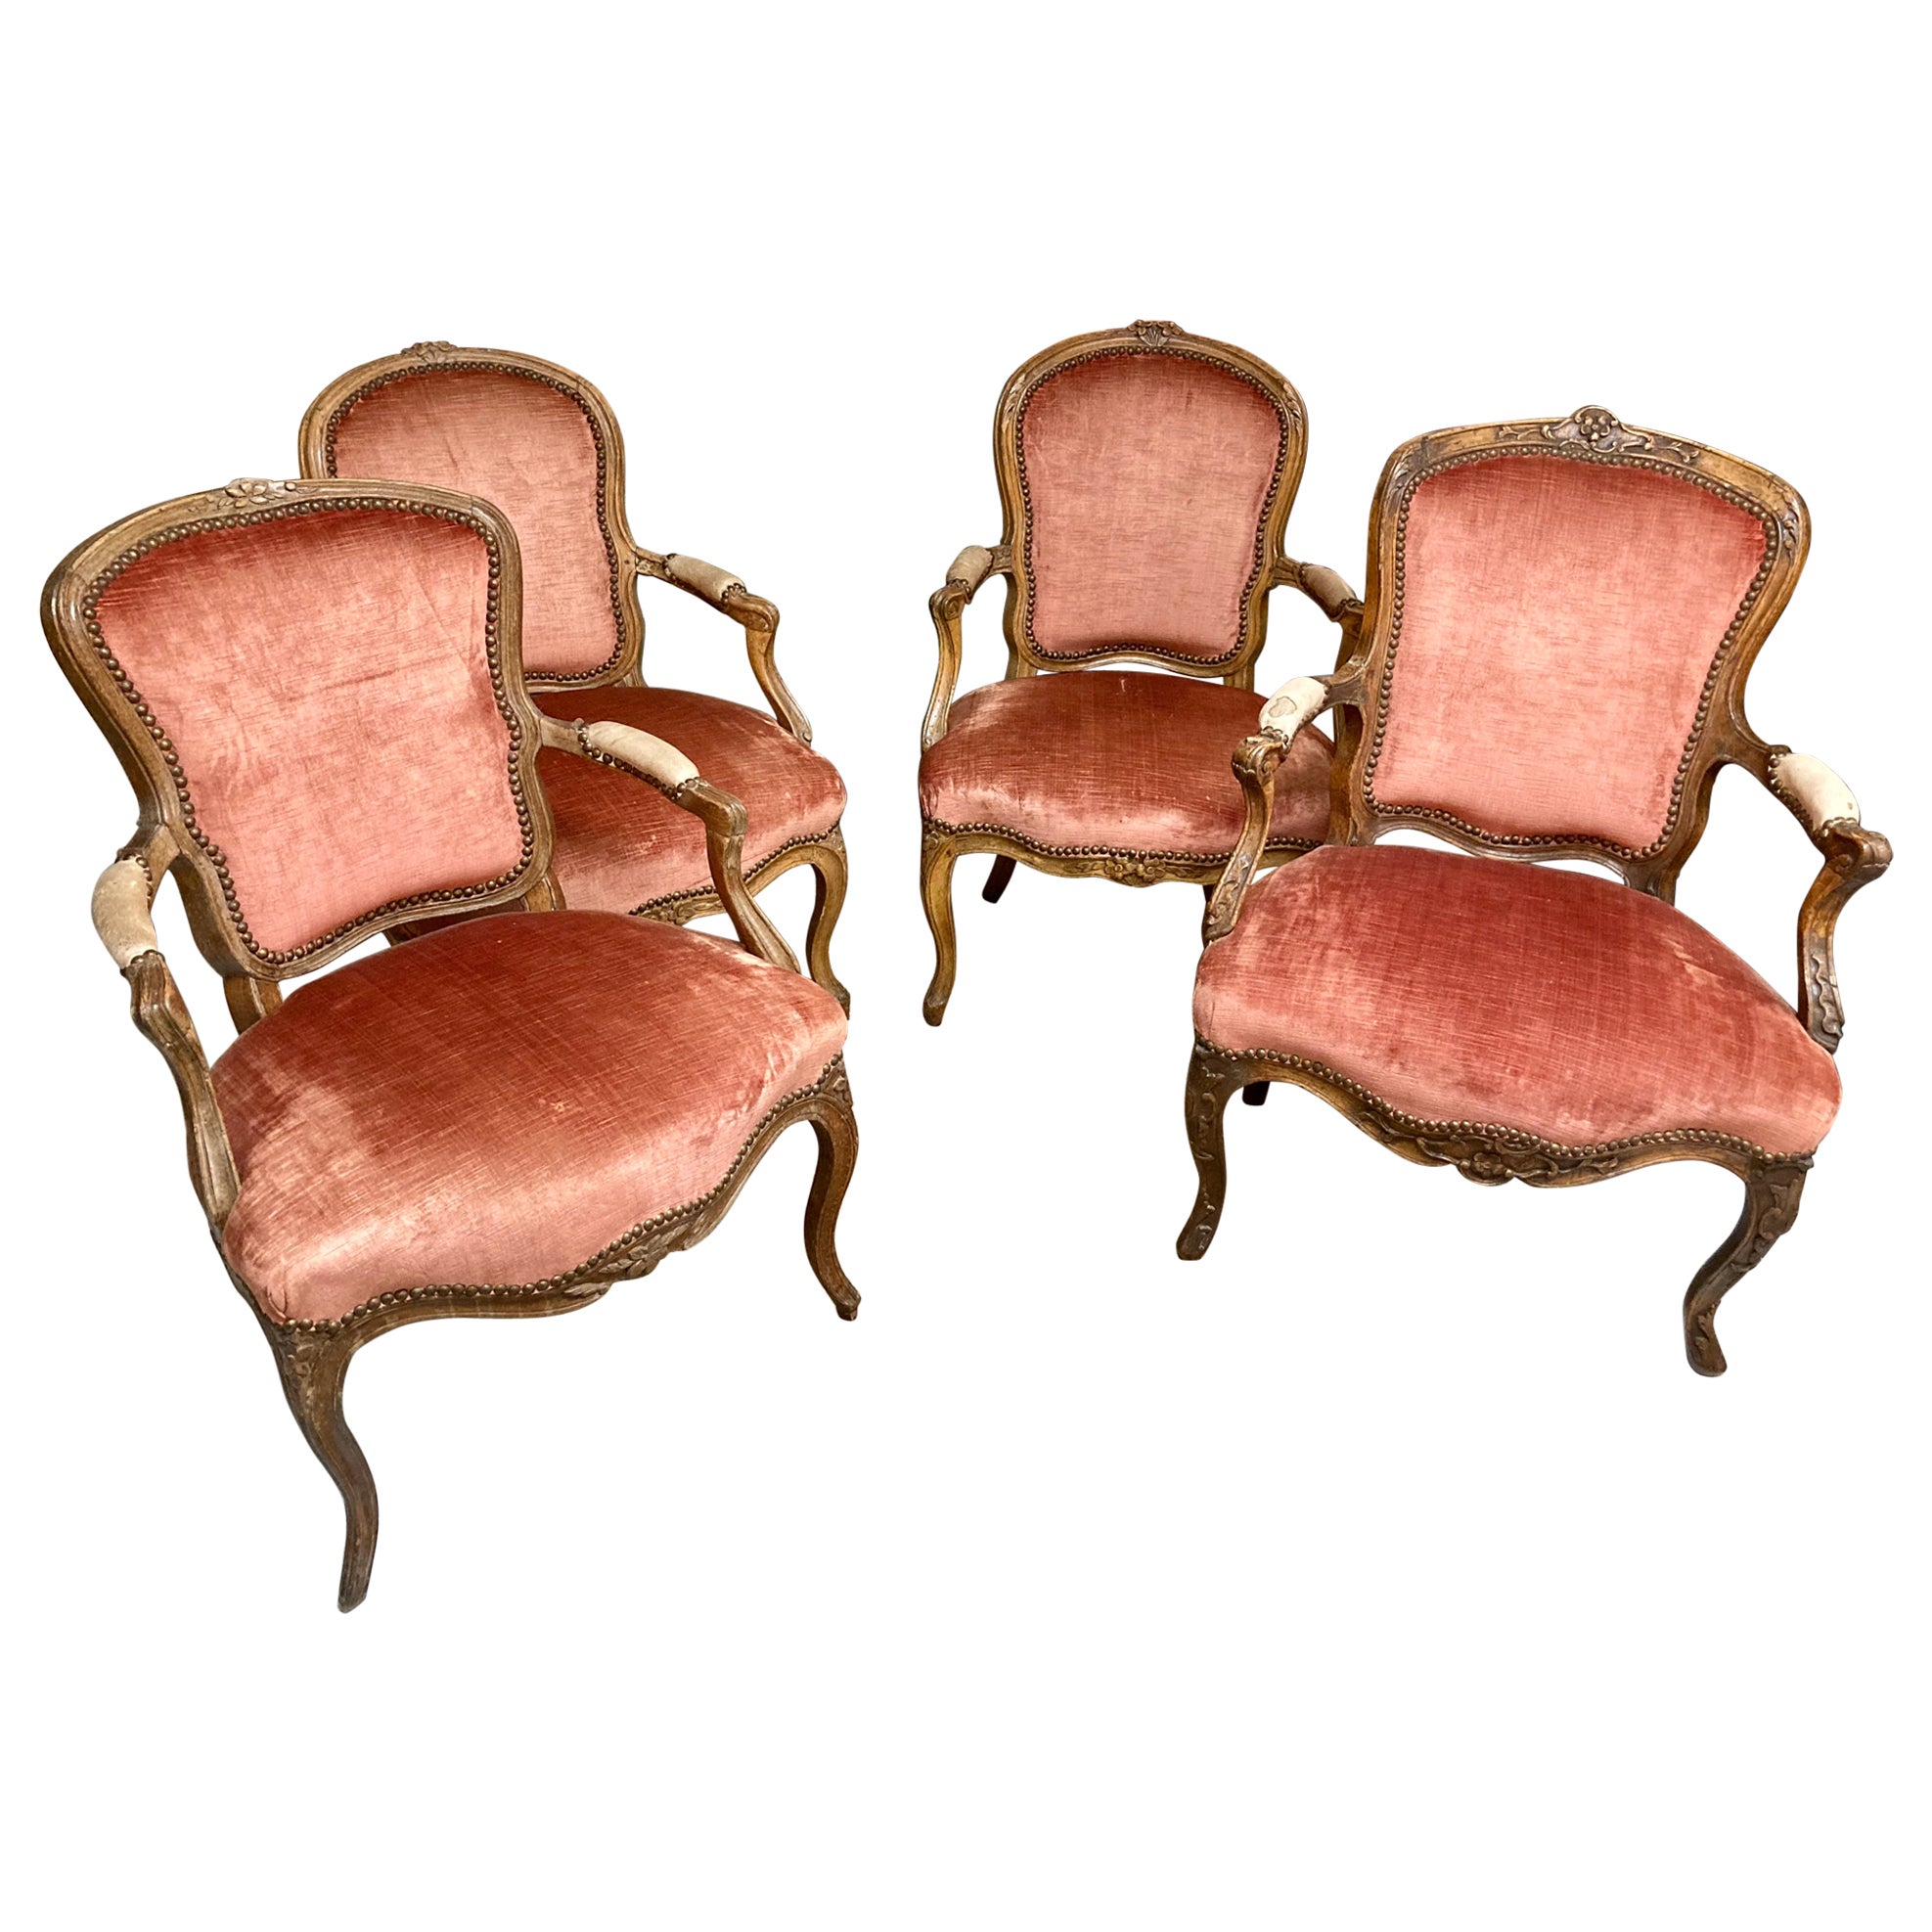 Chaises fauteuils Louis XV du 18ème siècle, chacune avec des sculptures uniques - Lot de 4